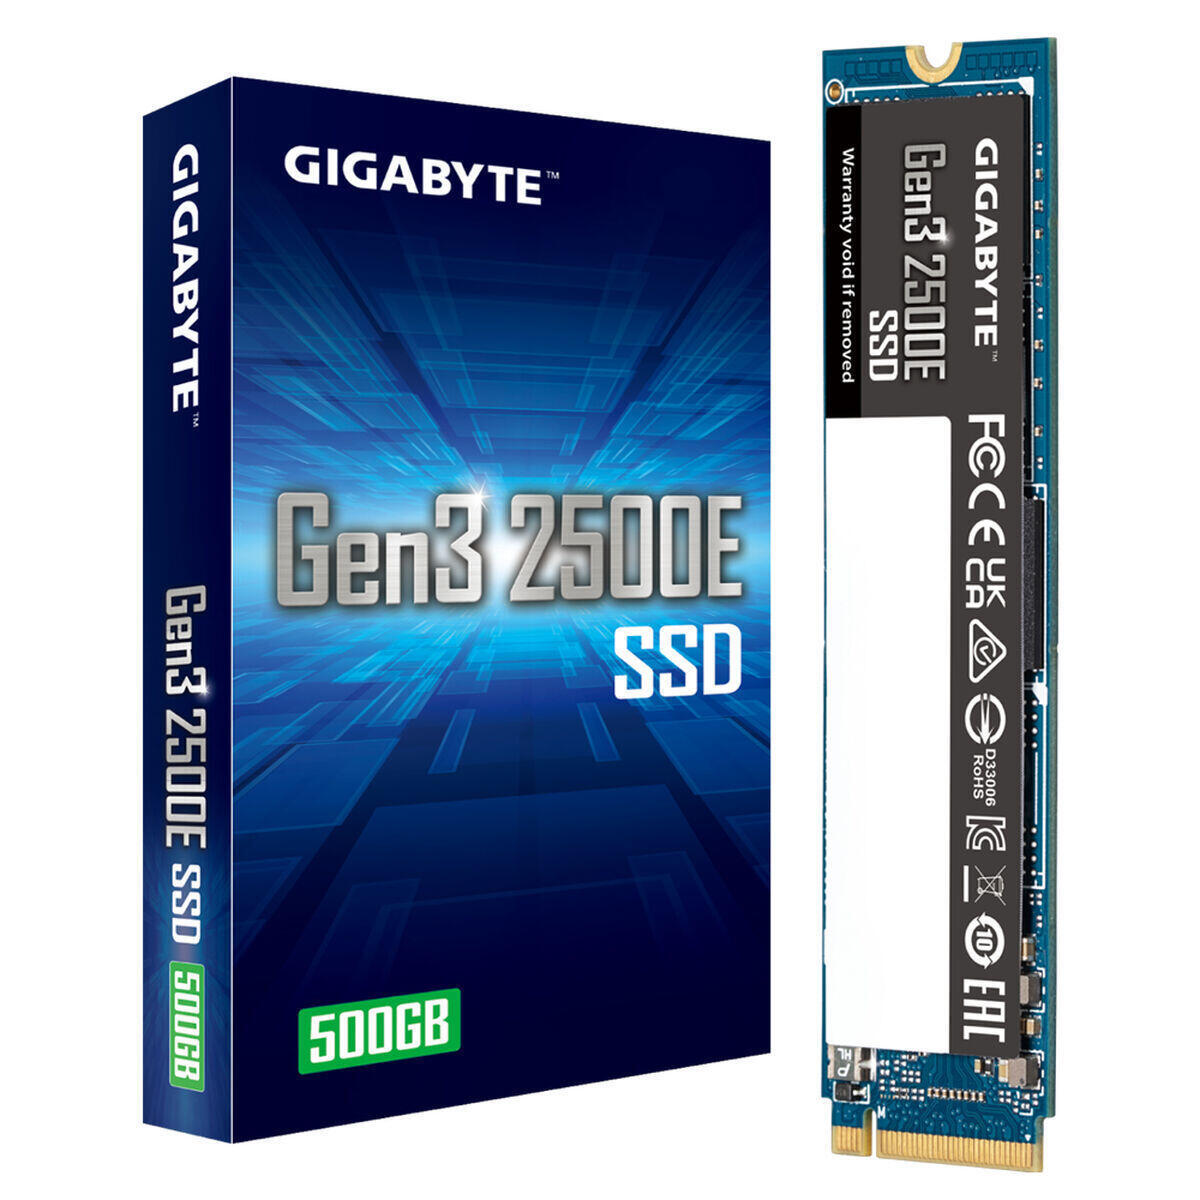 Gigabyte Gen3 2500E SSD 500GB M.2 NVMe PCI Express 3.0 G325E500G